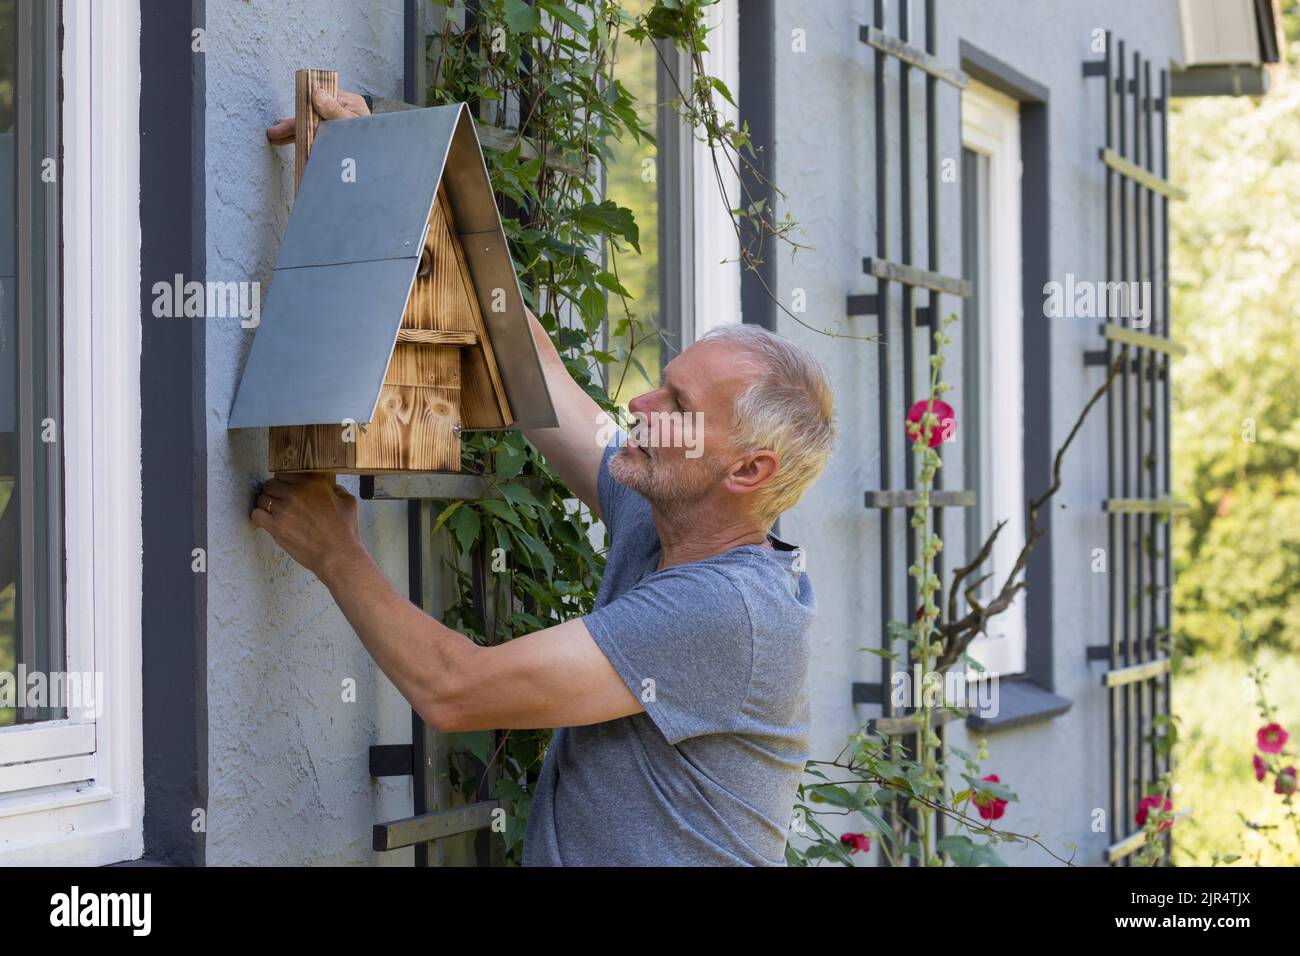 man hanging a homemade bird house on a facade Stock Photo